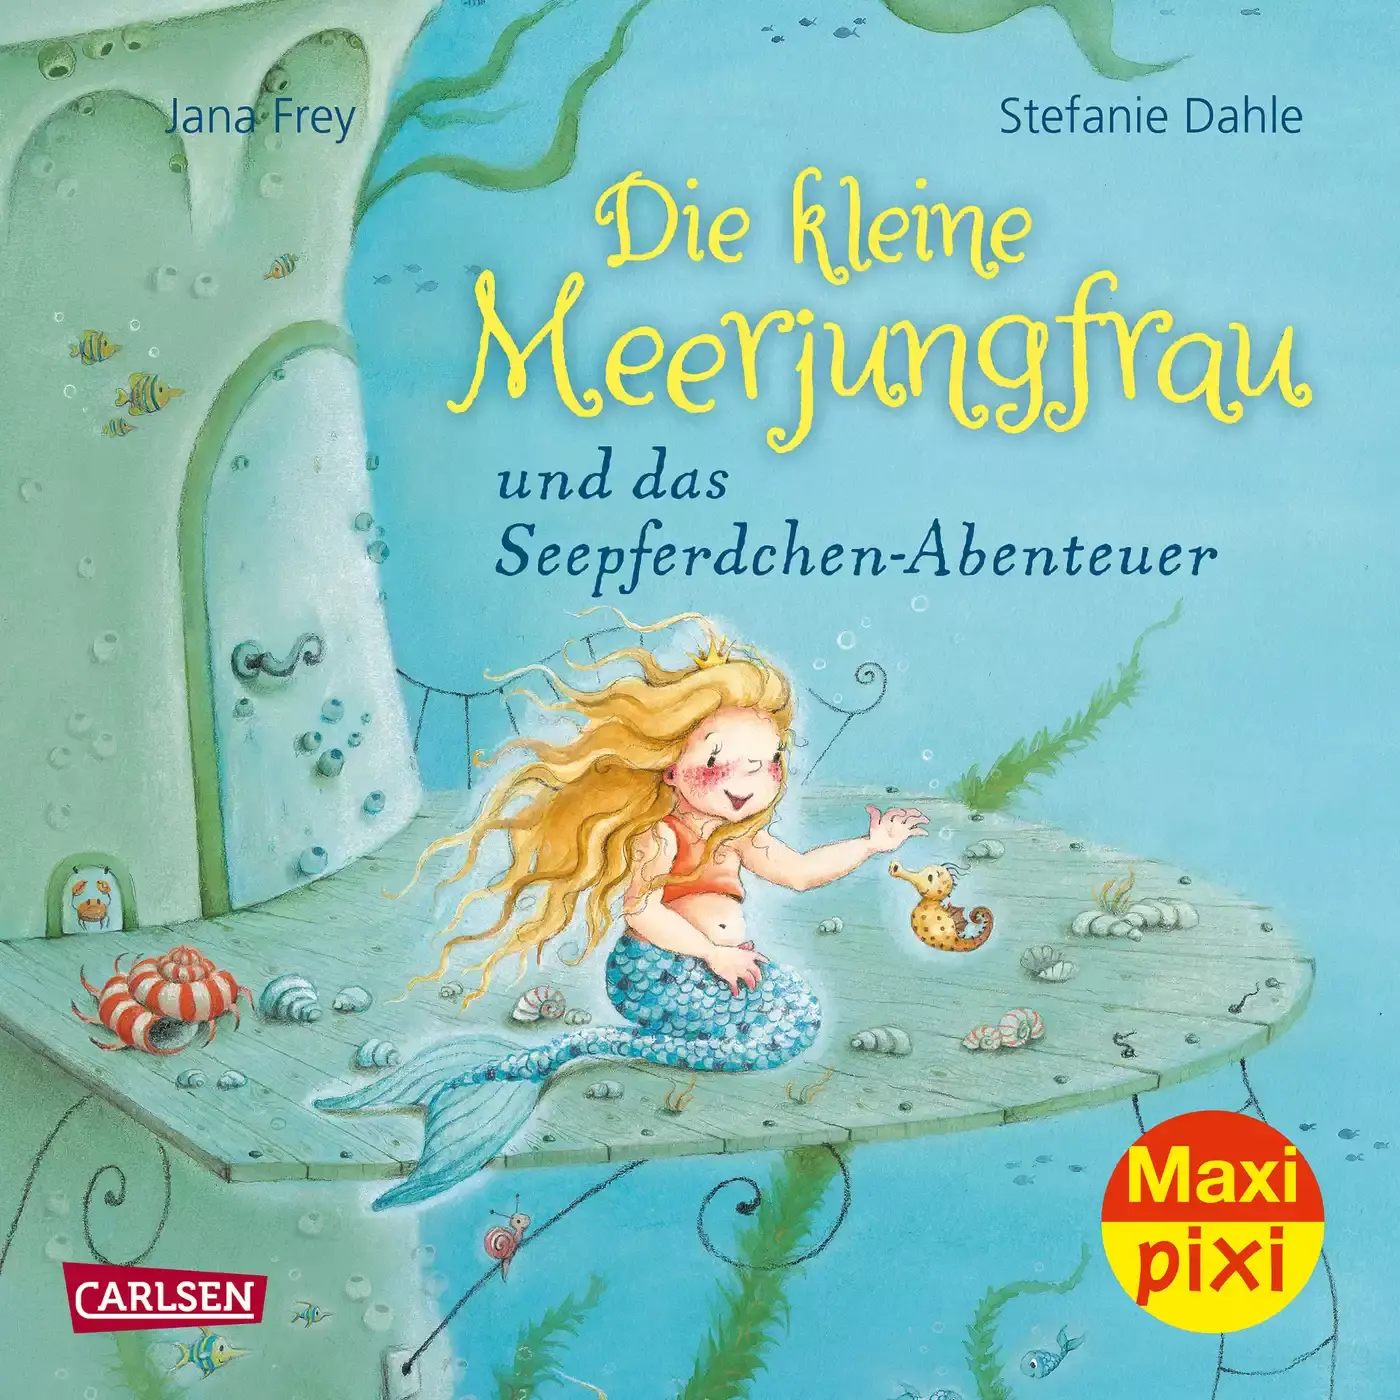 Maxi Pixi Die kleine Meerjungfrau CARLSEN 2000582256206 1